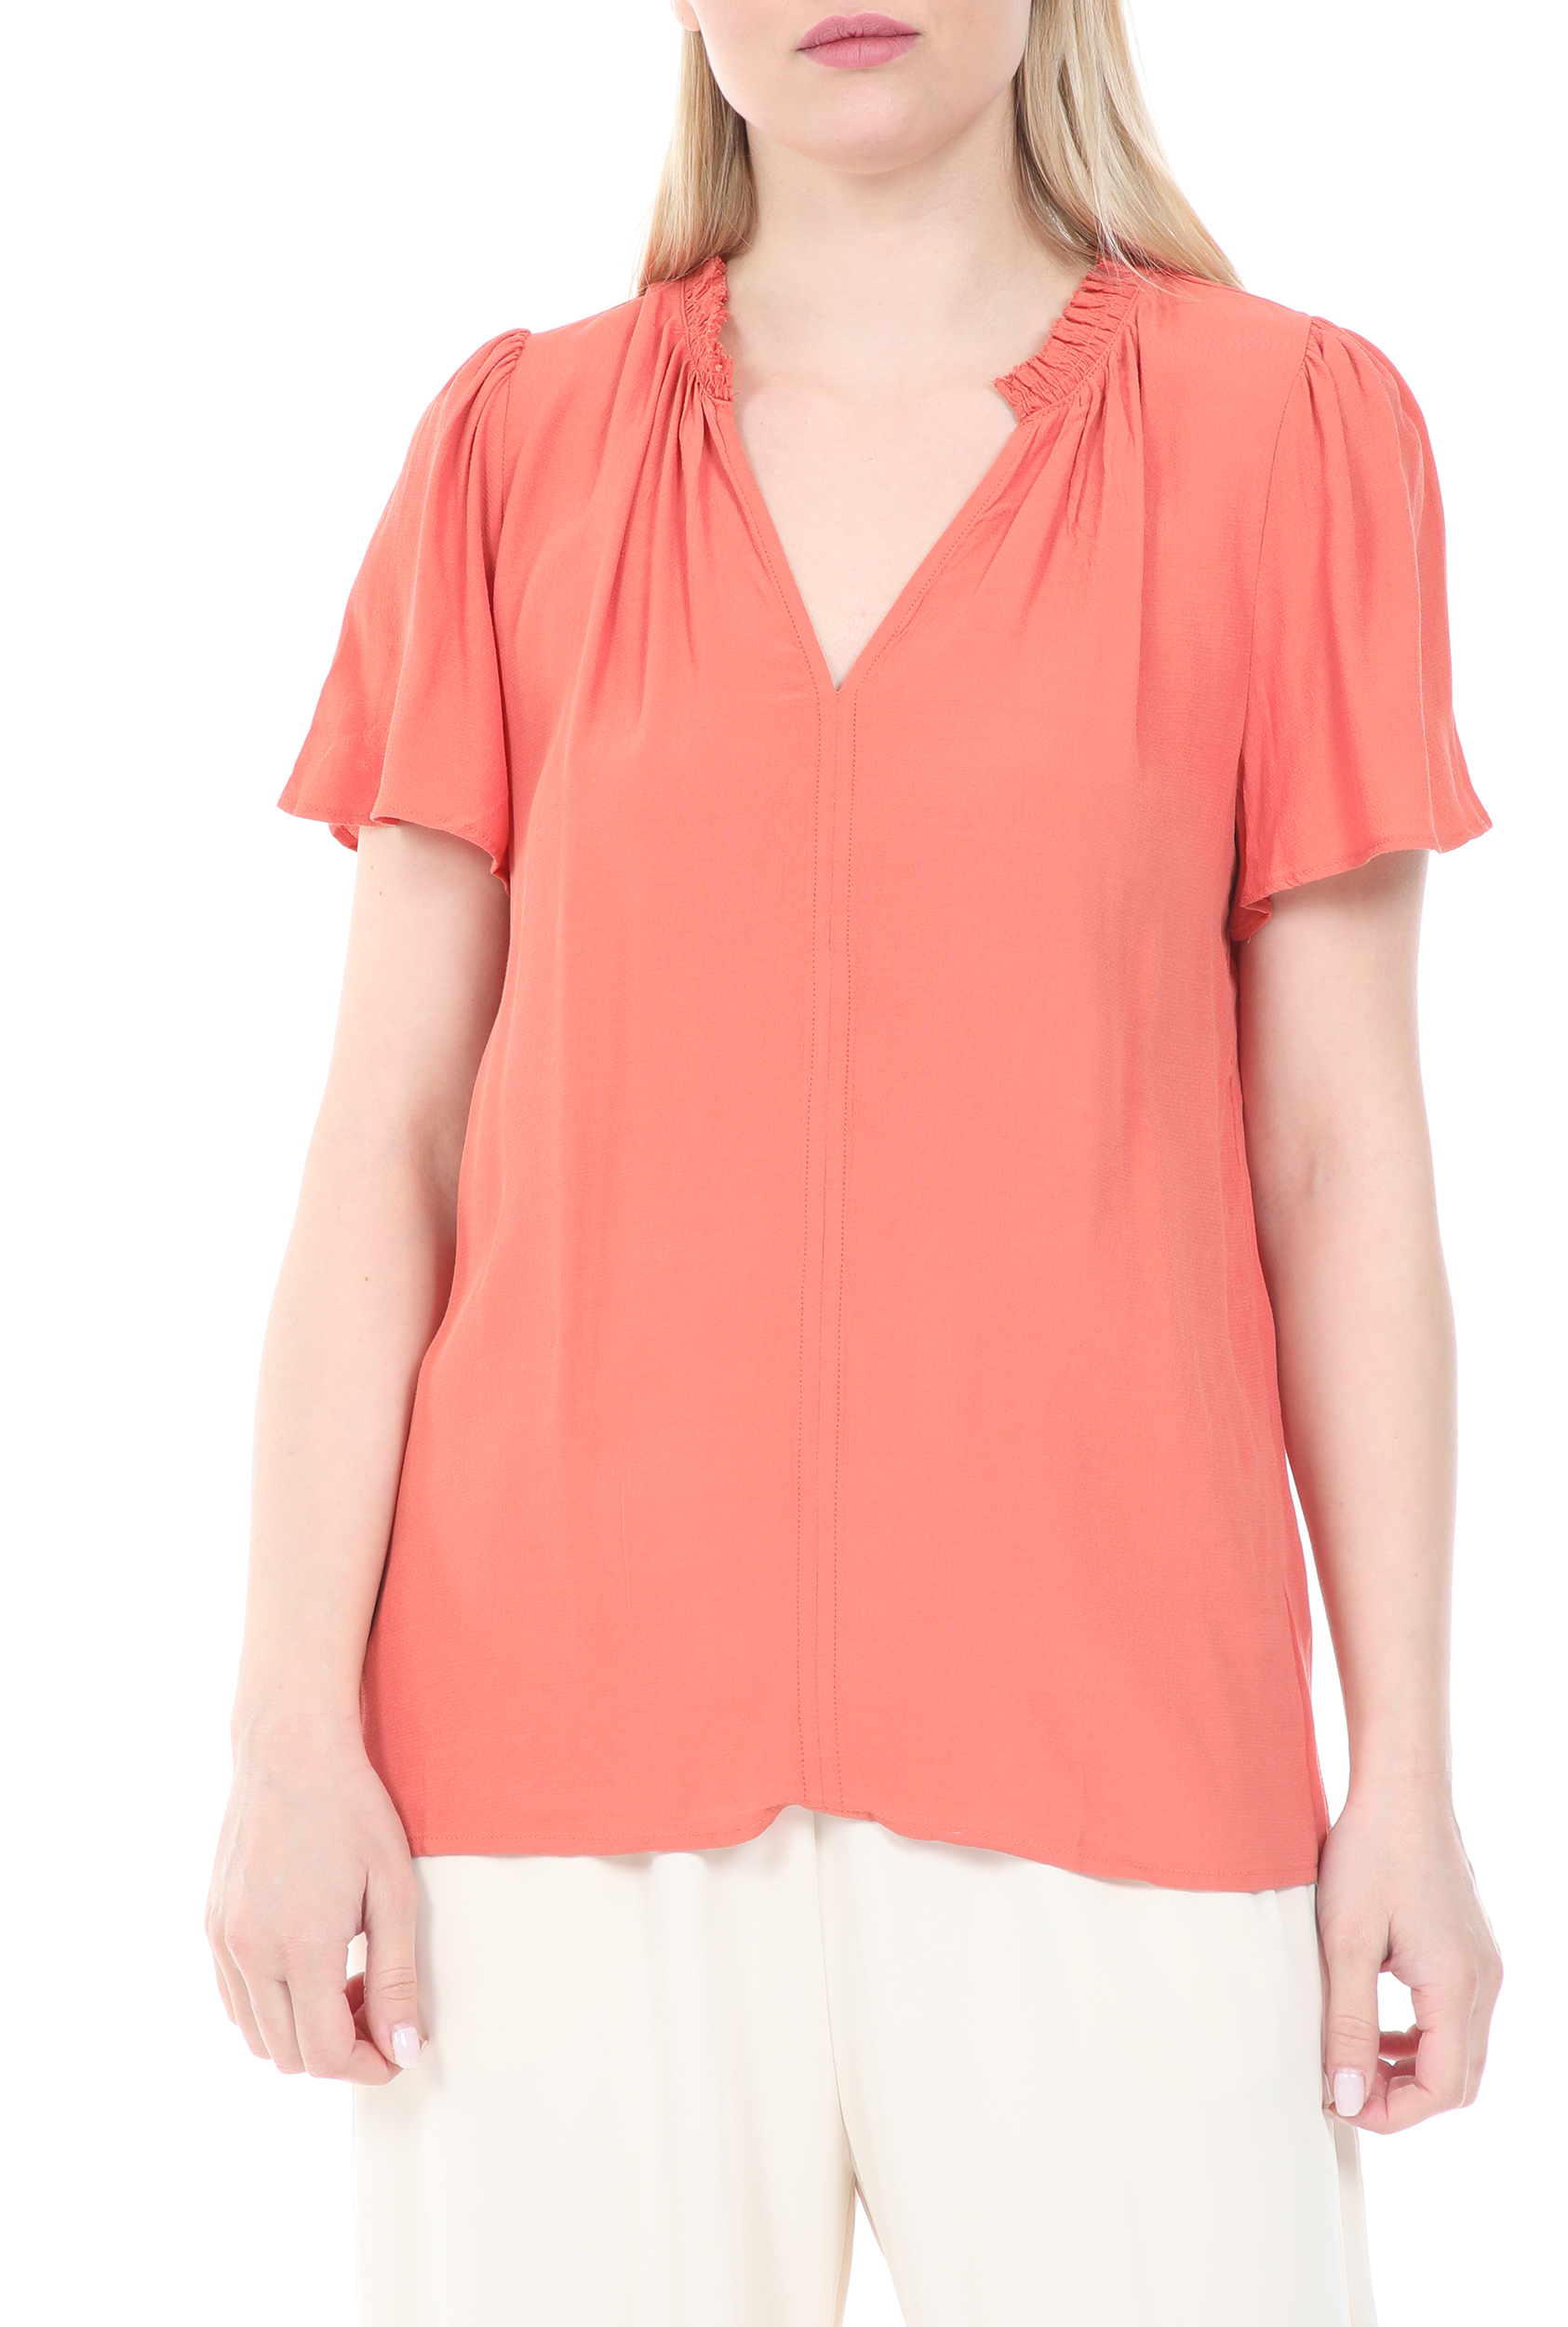 Γυναικεία/Ρούχα/Μπλούζες/Κοντομάνικες GRACE AND MILA - Γυναικεία μπλούζα GRACE AND MILA CASPIAN πορτοκαλί